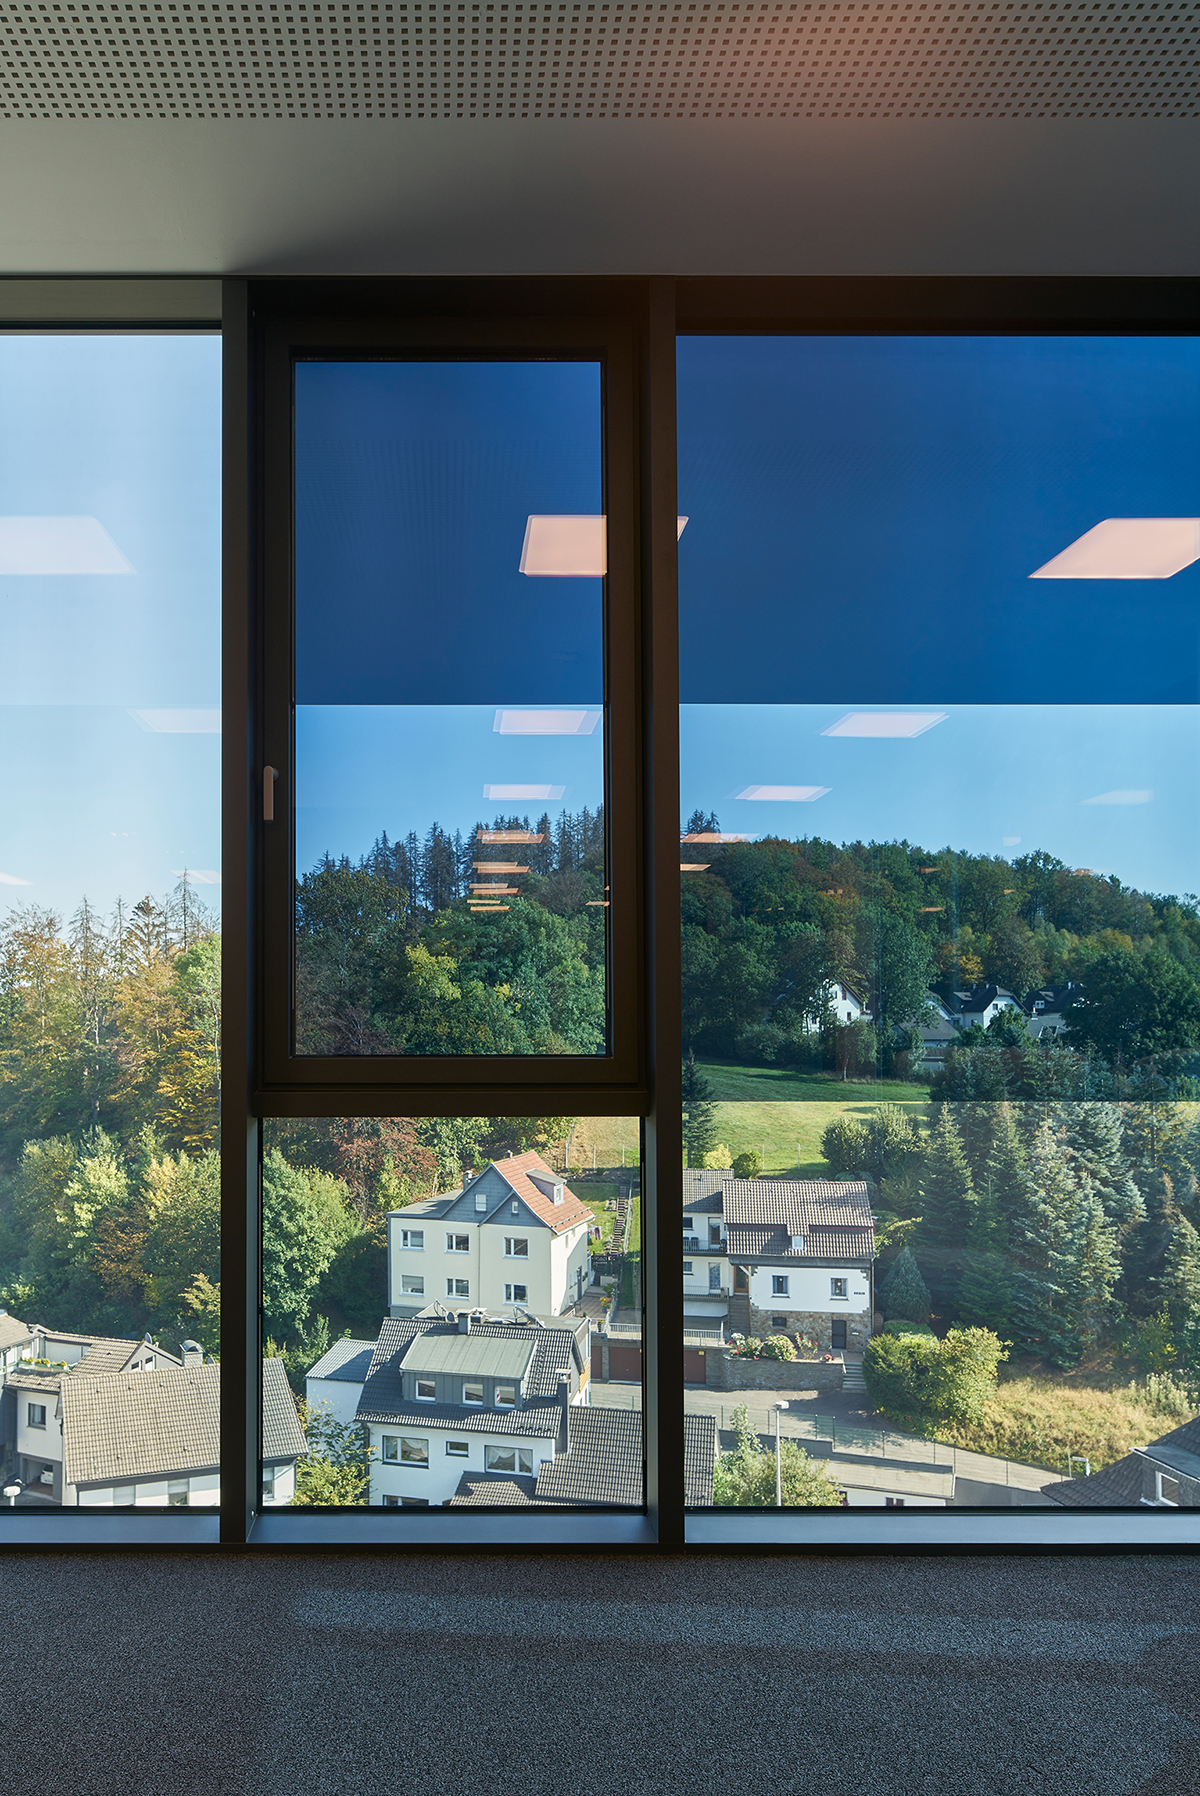 Okna na celou výšku místnosti s elektrochromatickým sklem SageGlass® od společnosti Saint-Gobain jsou rozdělena do tří individuálně ovládaných zón. To lidem umožňuje pracovat kdykoli během dne bez oslnění a užívat si optimální denní světlo za všech povětrnostních podmínek.